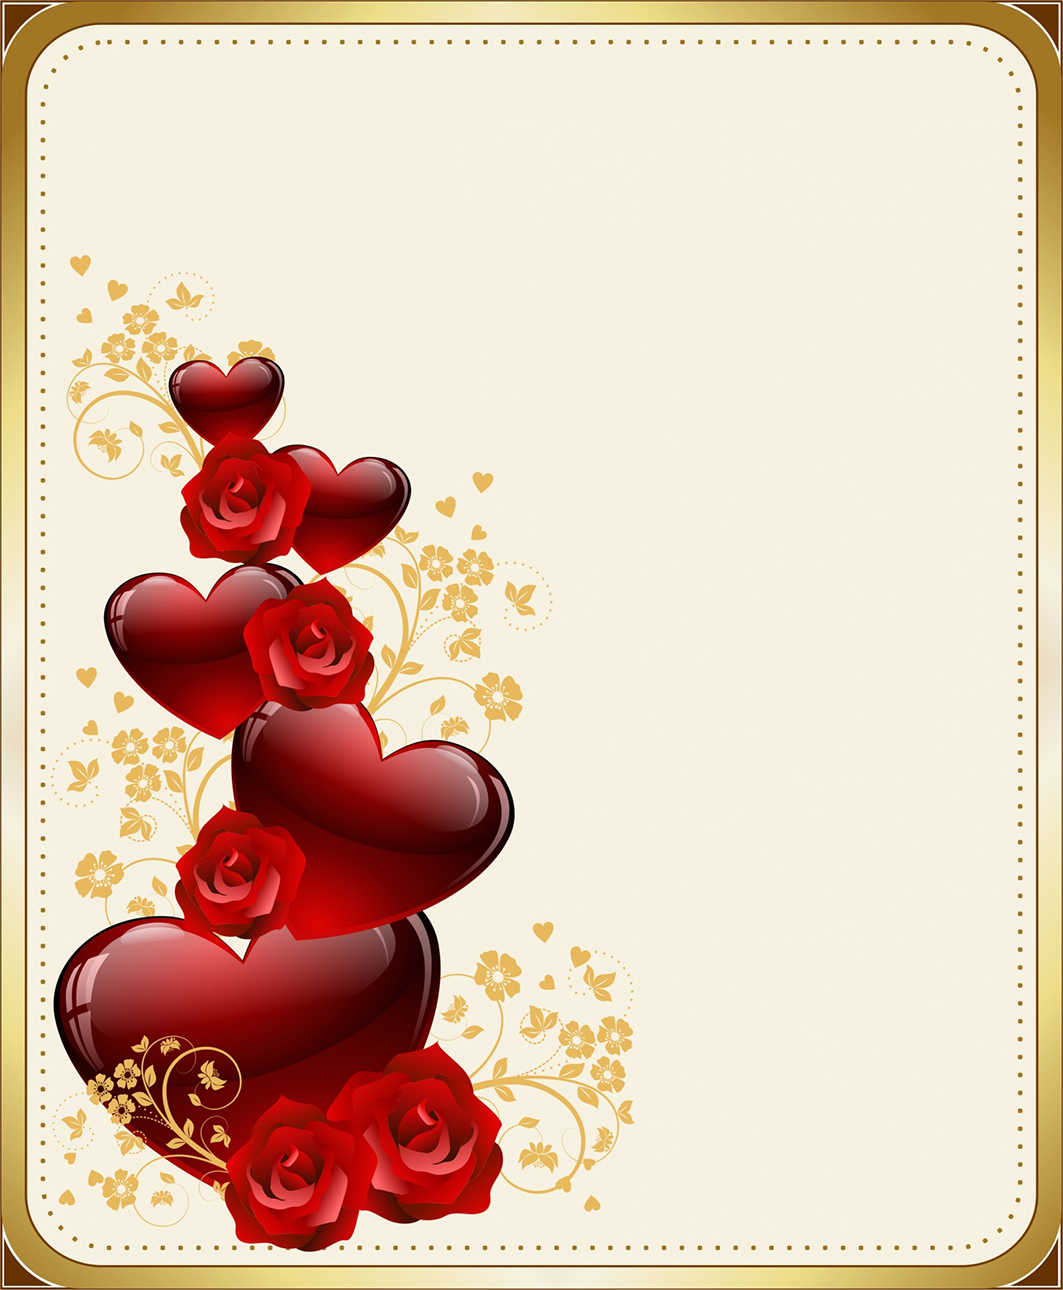 Happy Valentines Day frame